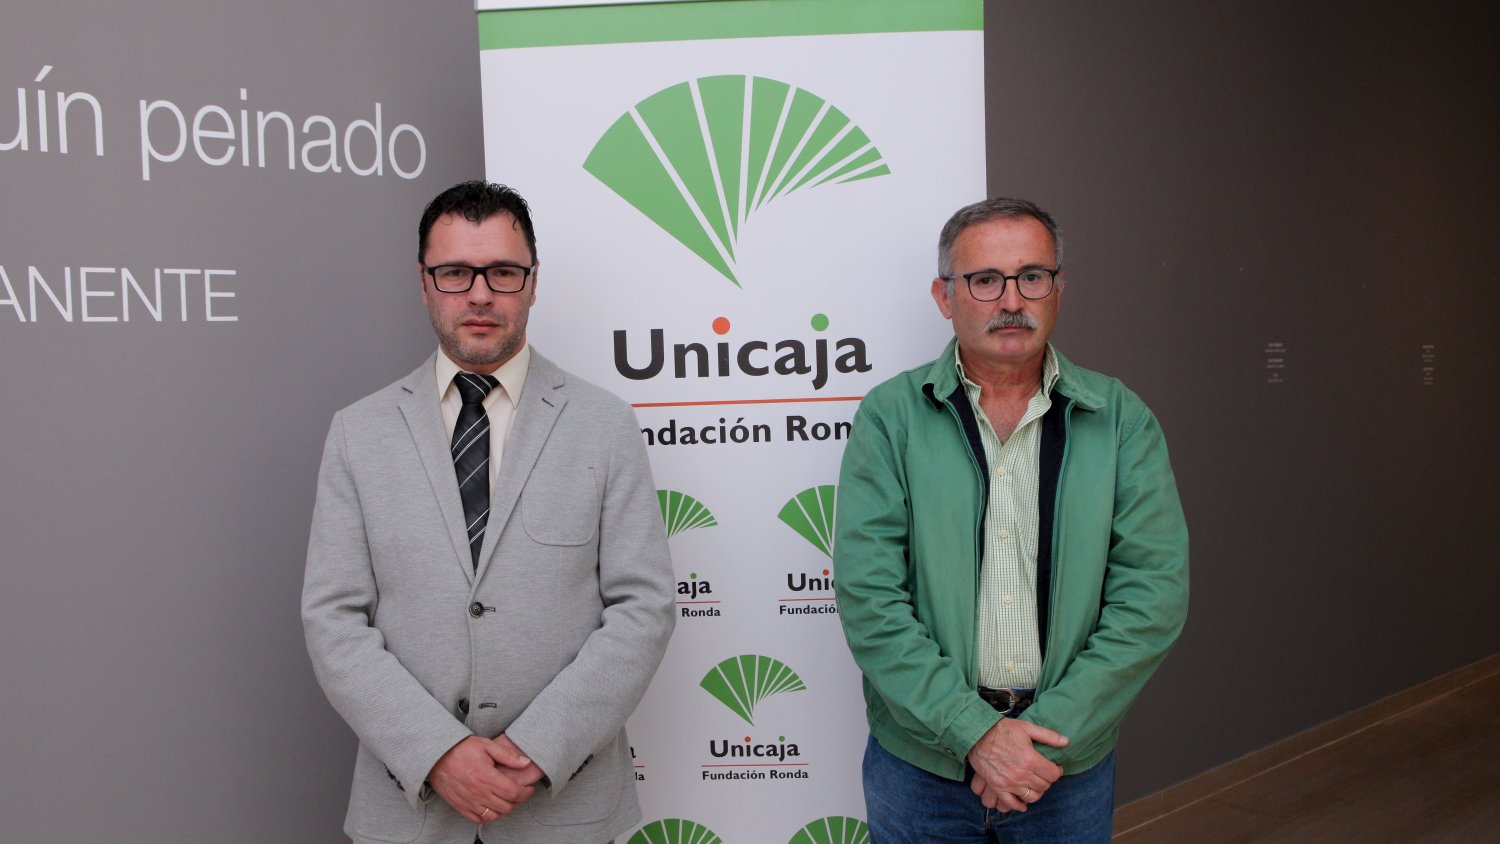 Fundación Unicaja Ronda celebra la décima edición del Aula Joaquín Peinado